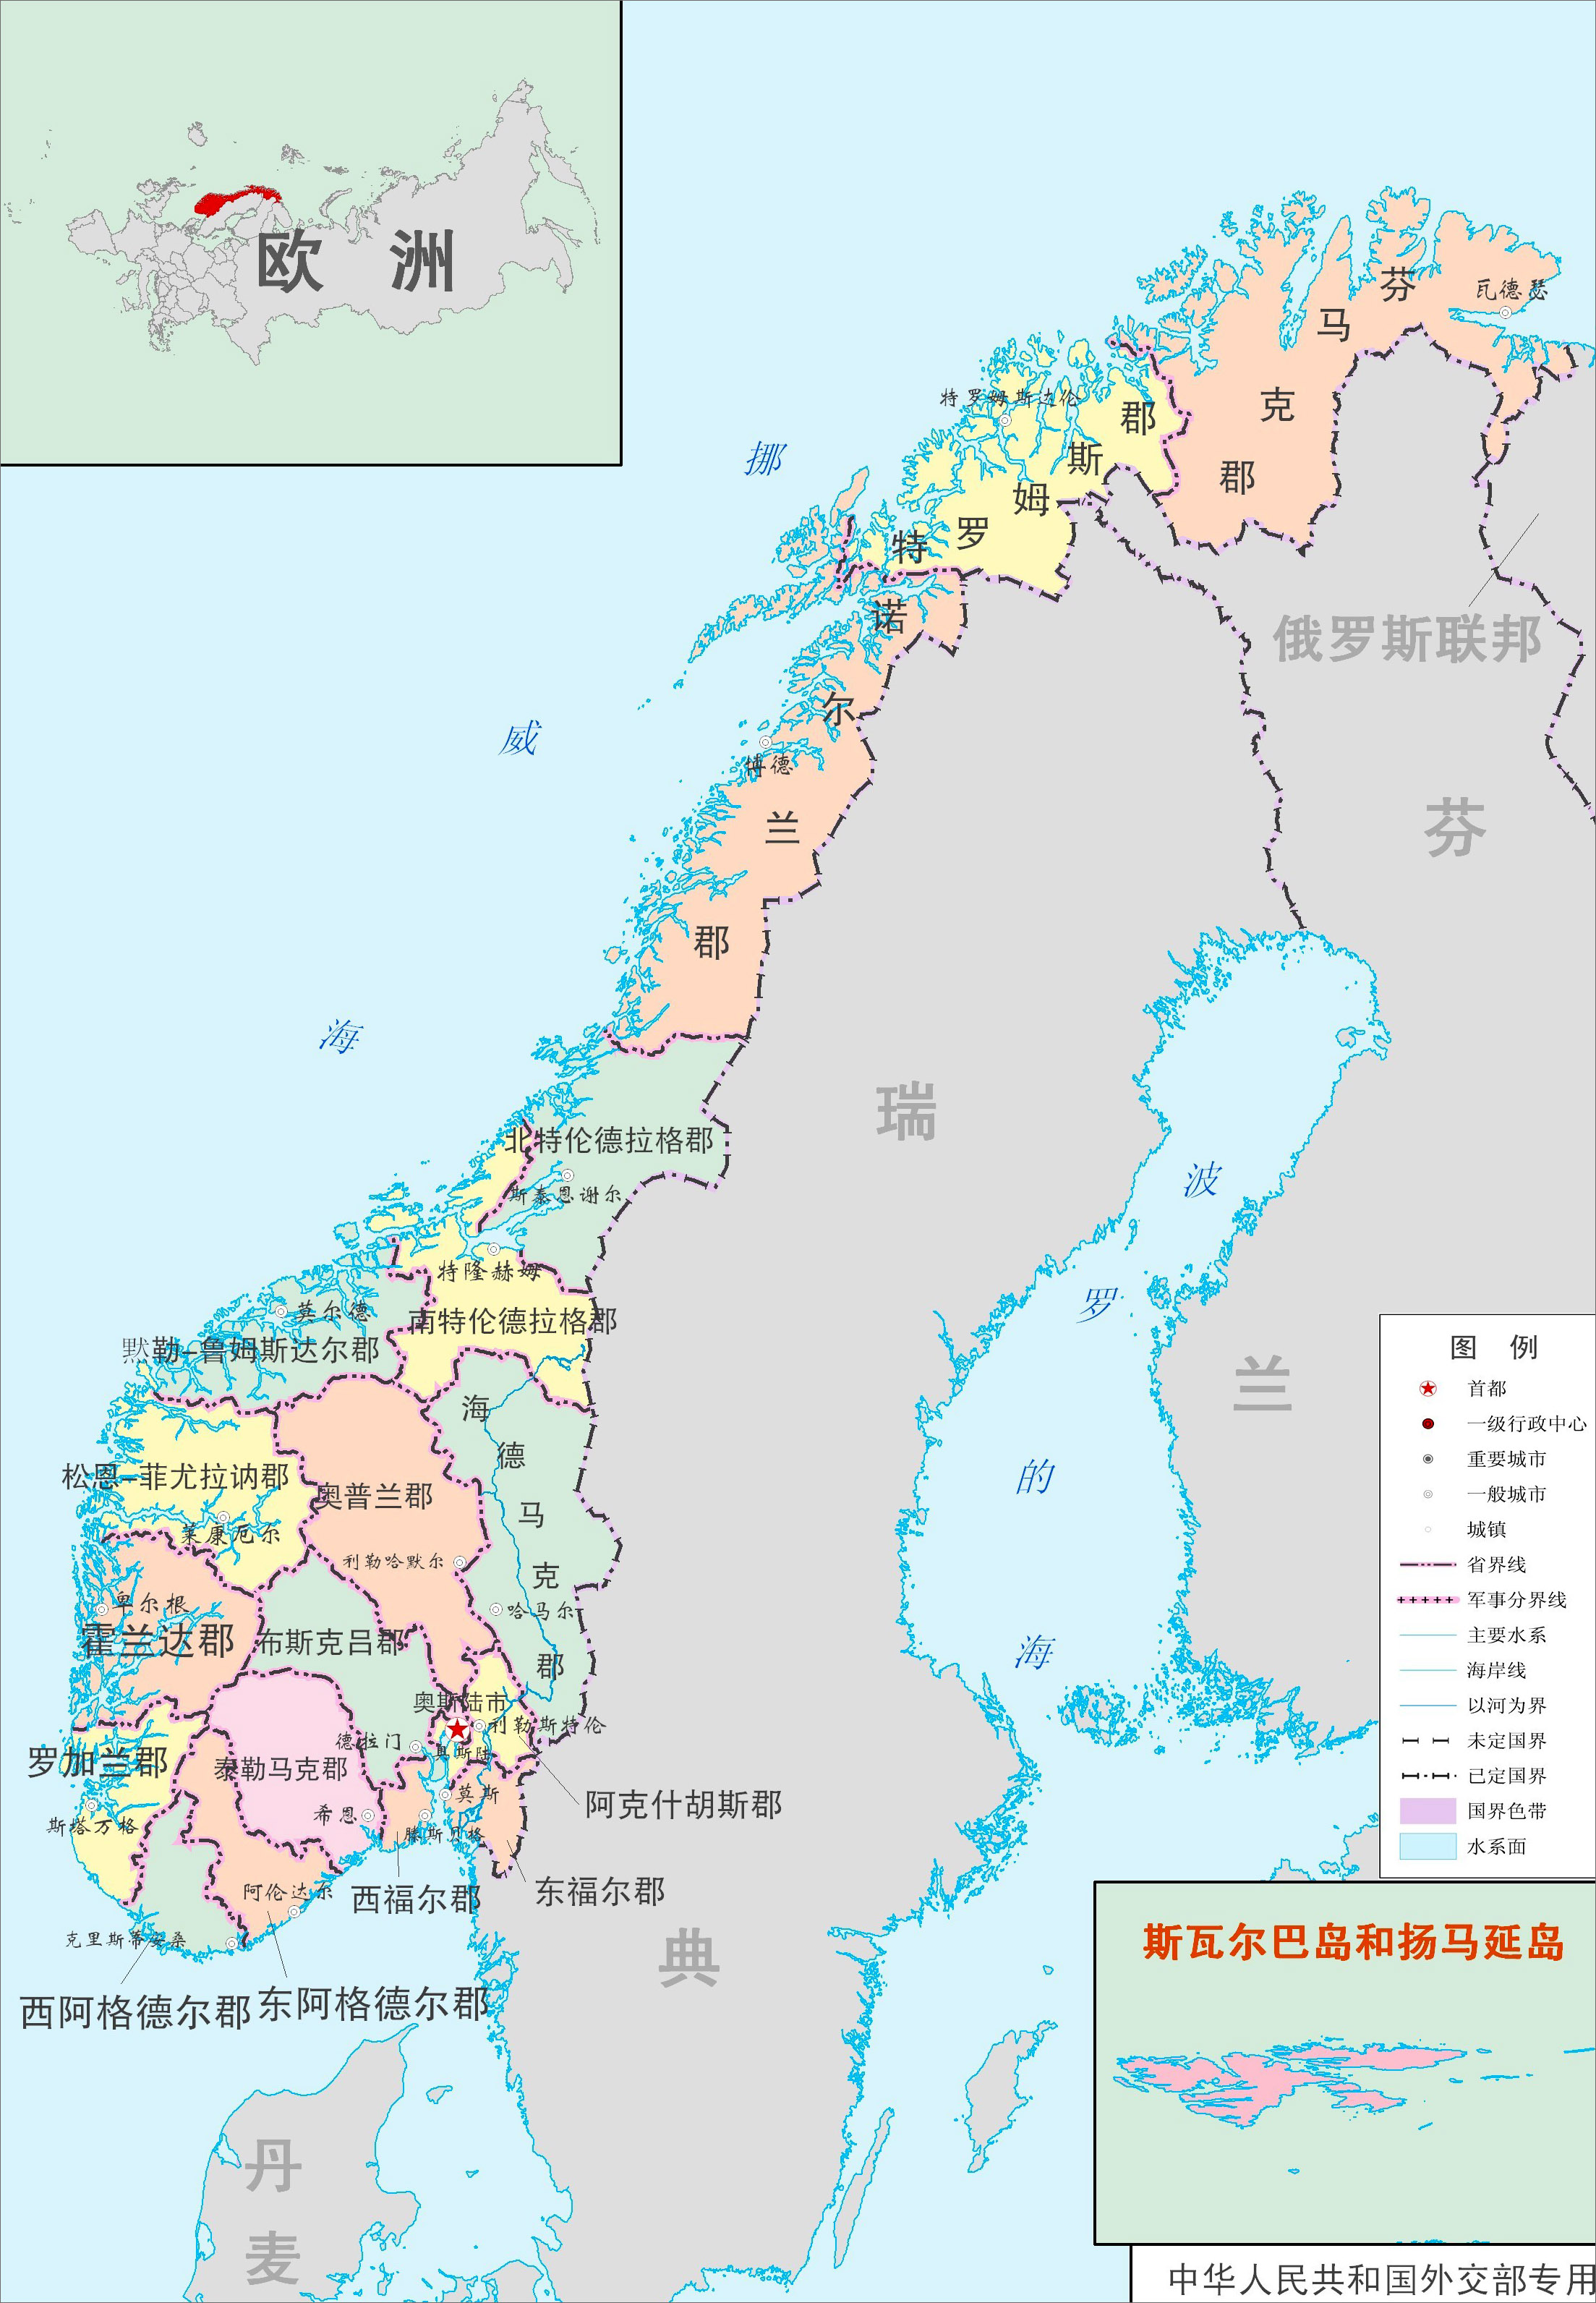 世界地图 欧洲 挪威  挪威行政区域图  分类: 挪威 世界行政地图集